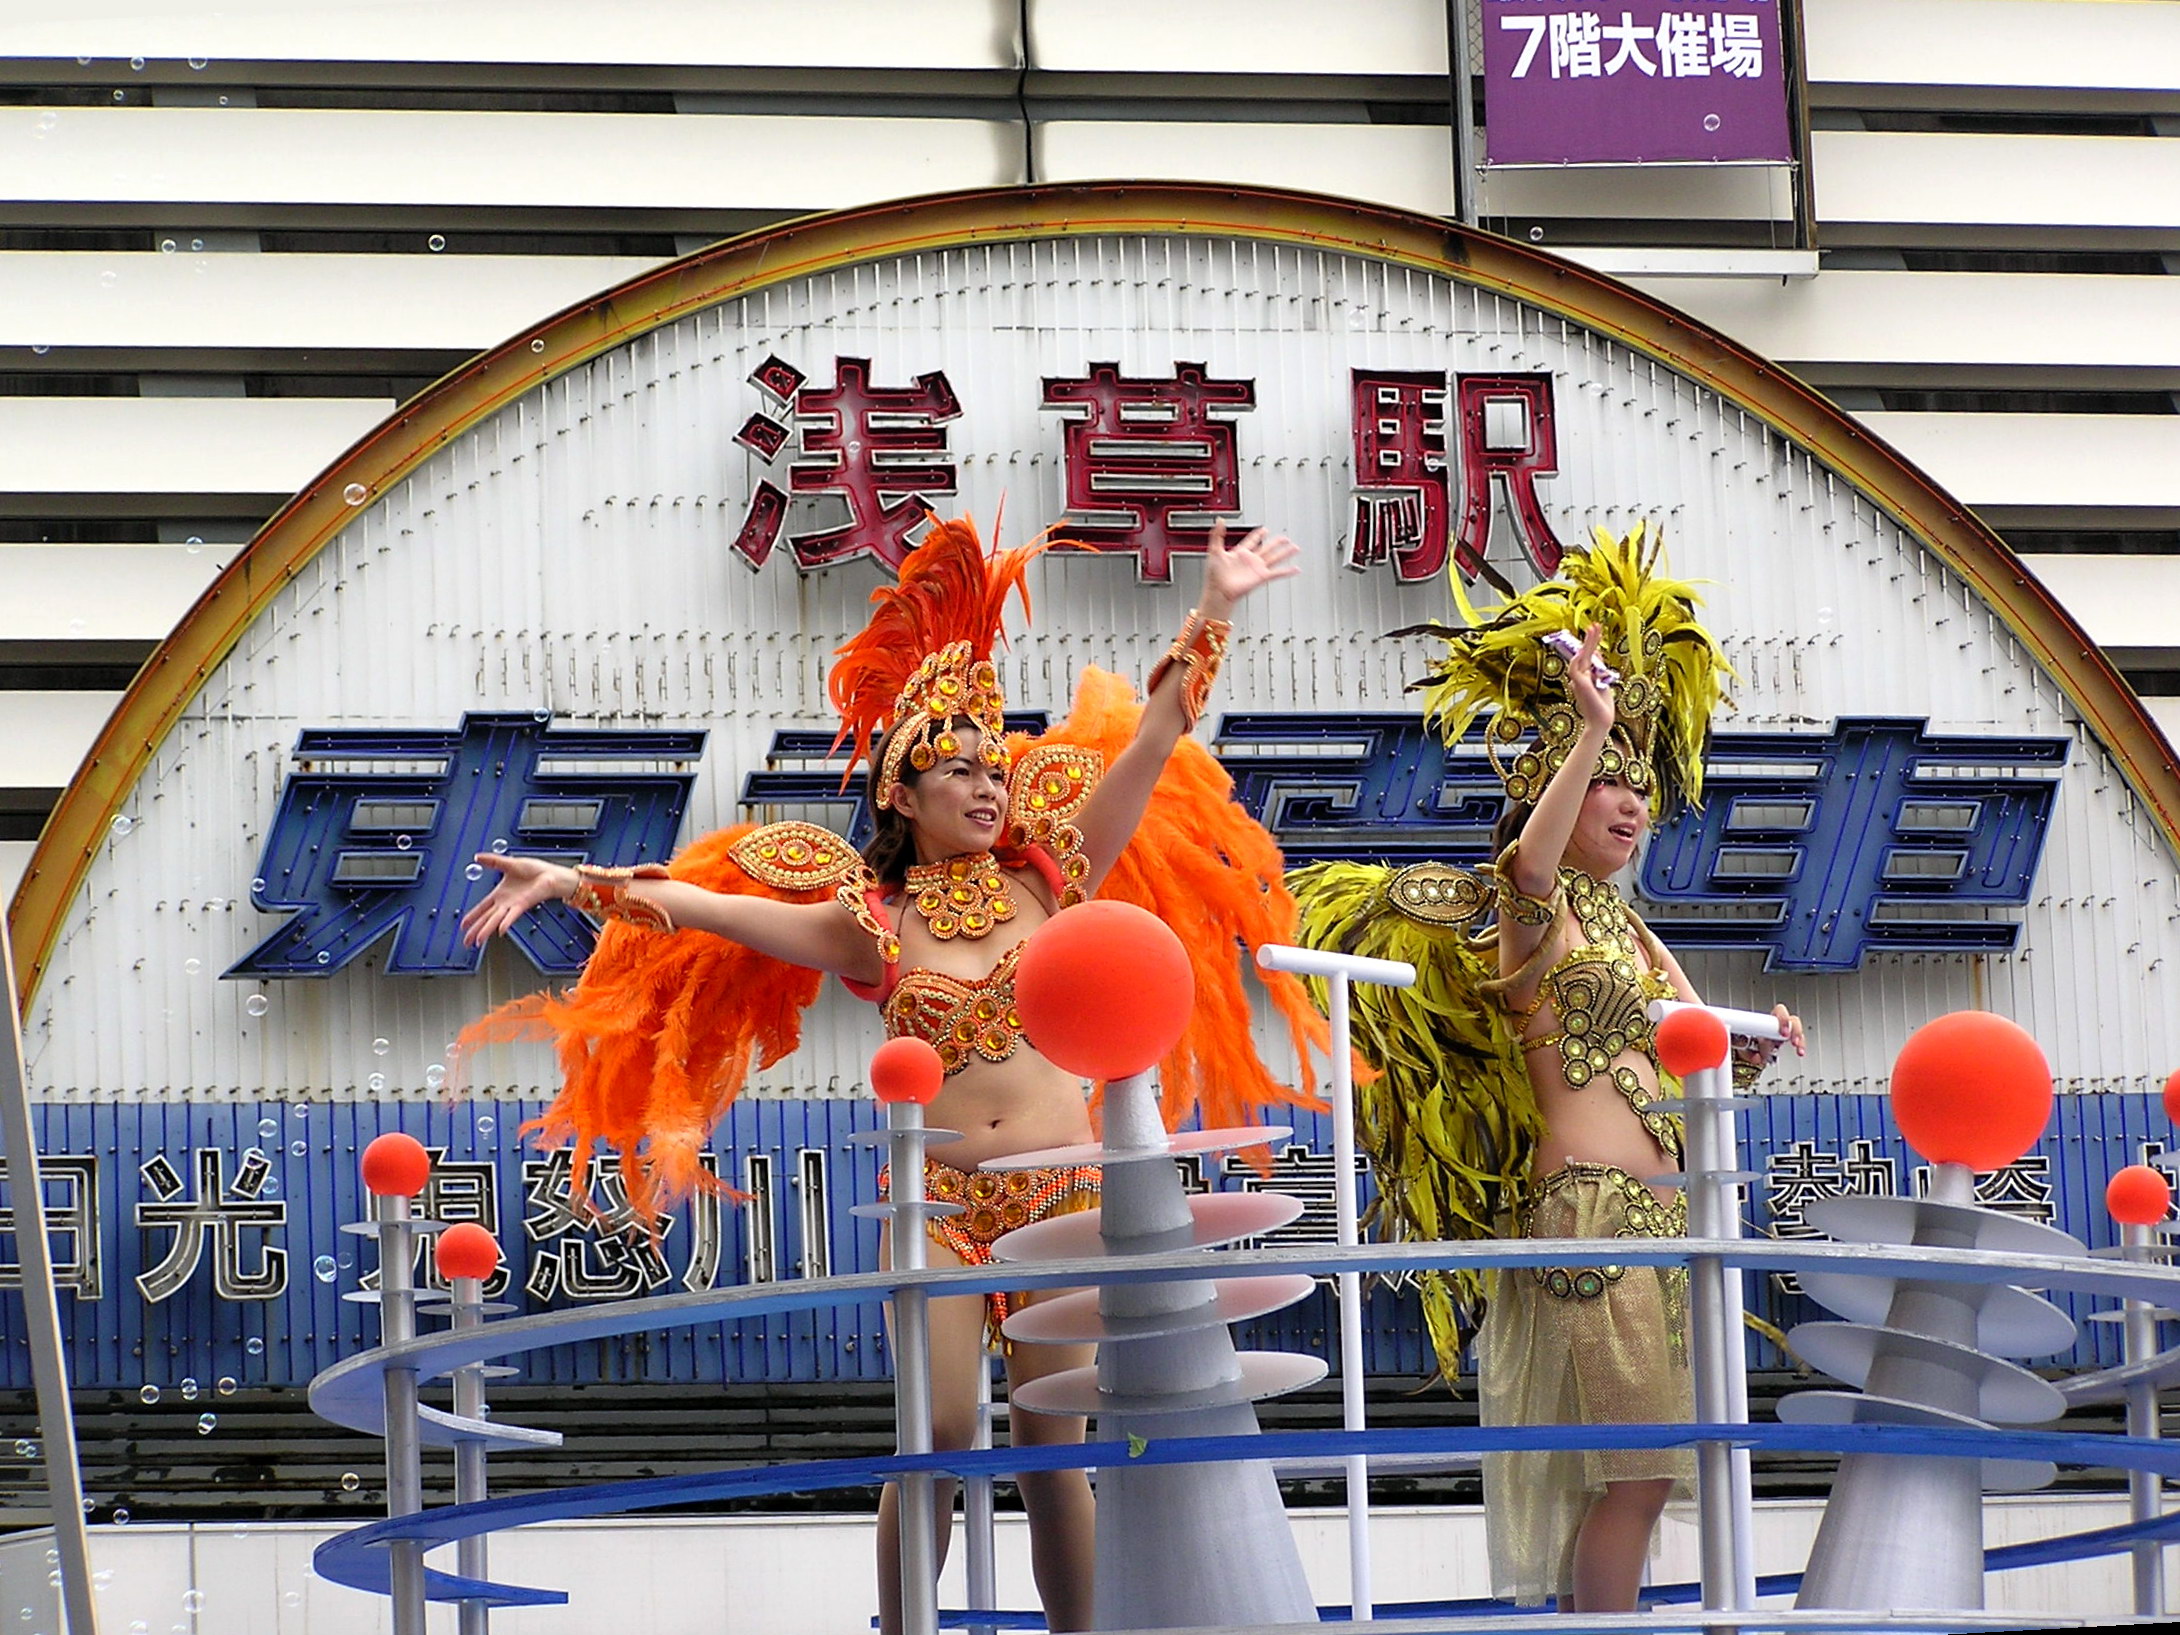 Asakusa Samba Carnival in Japan